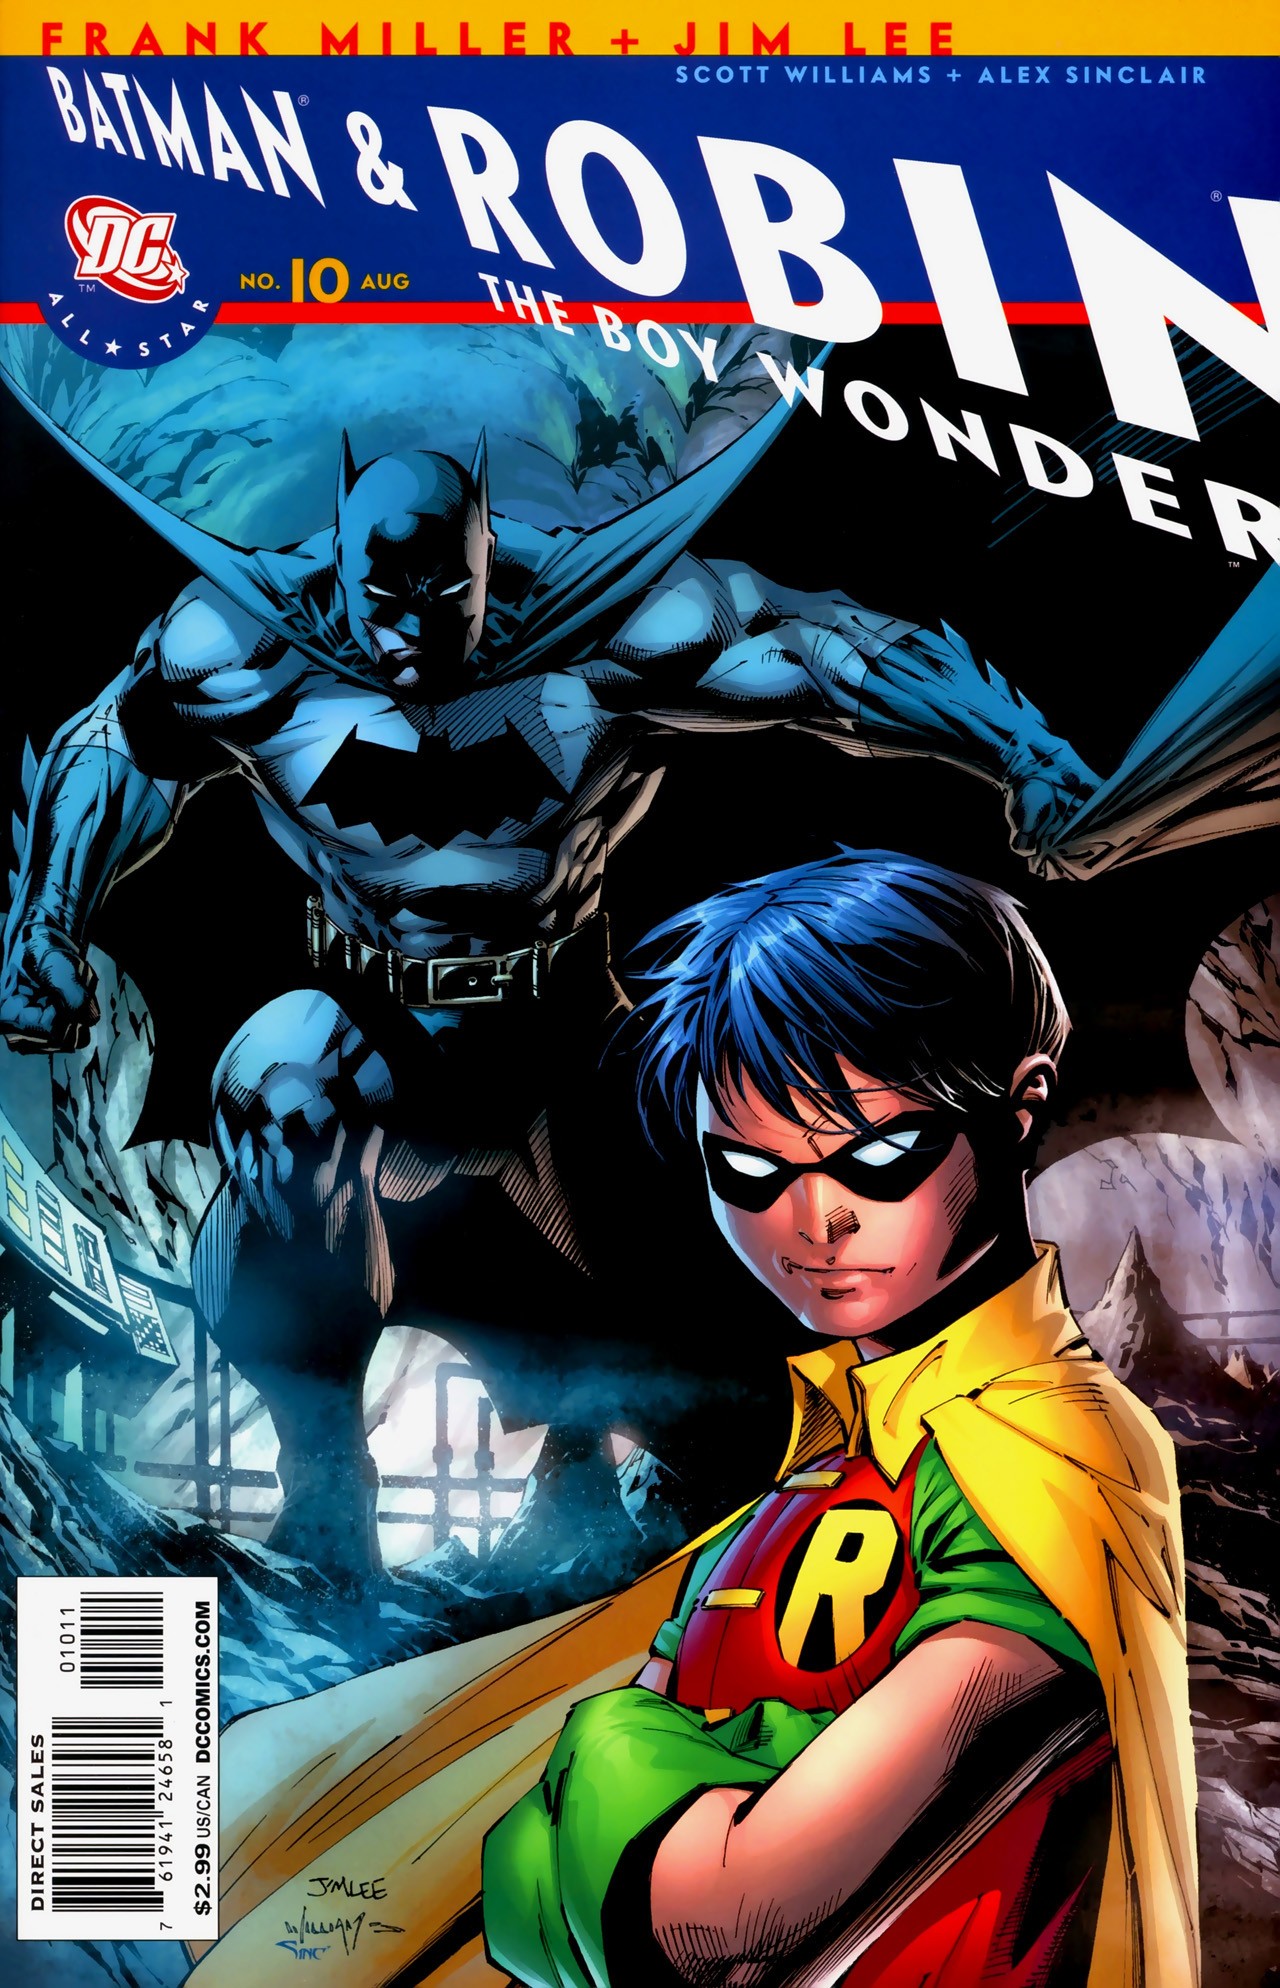 All Star Batman and Robin, the Boy Wonder Vol. 1 #10